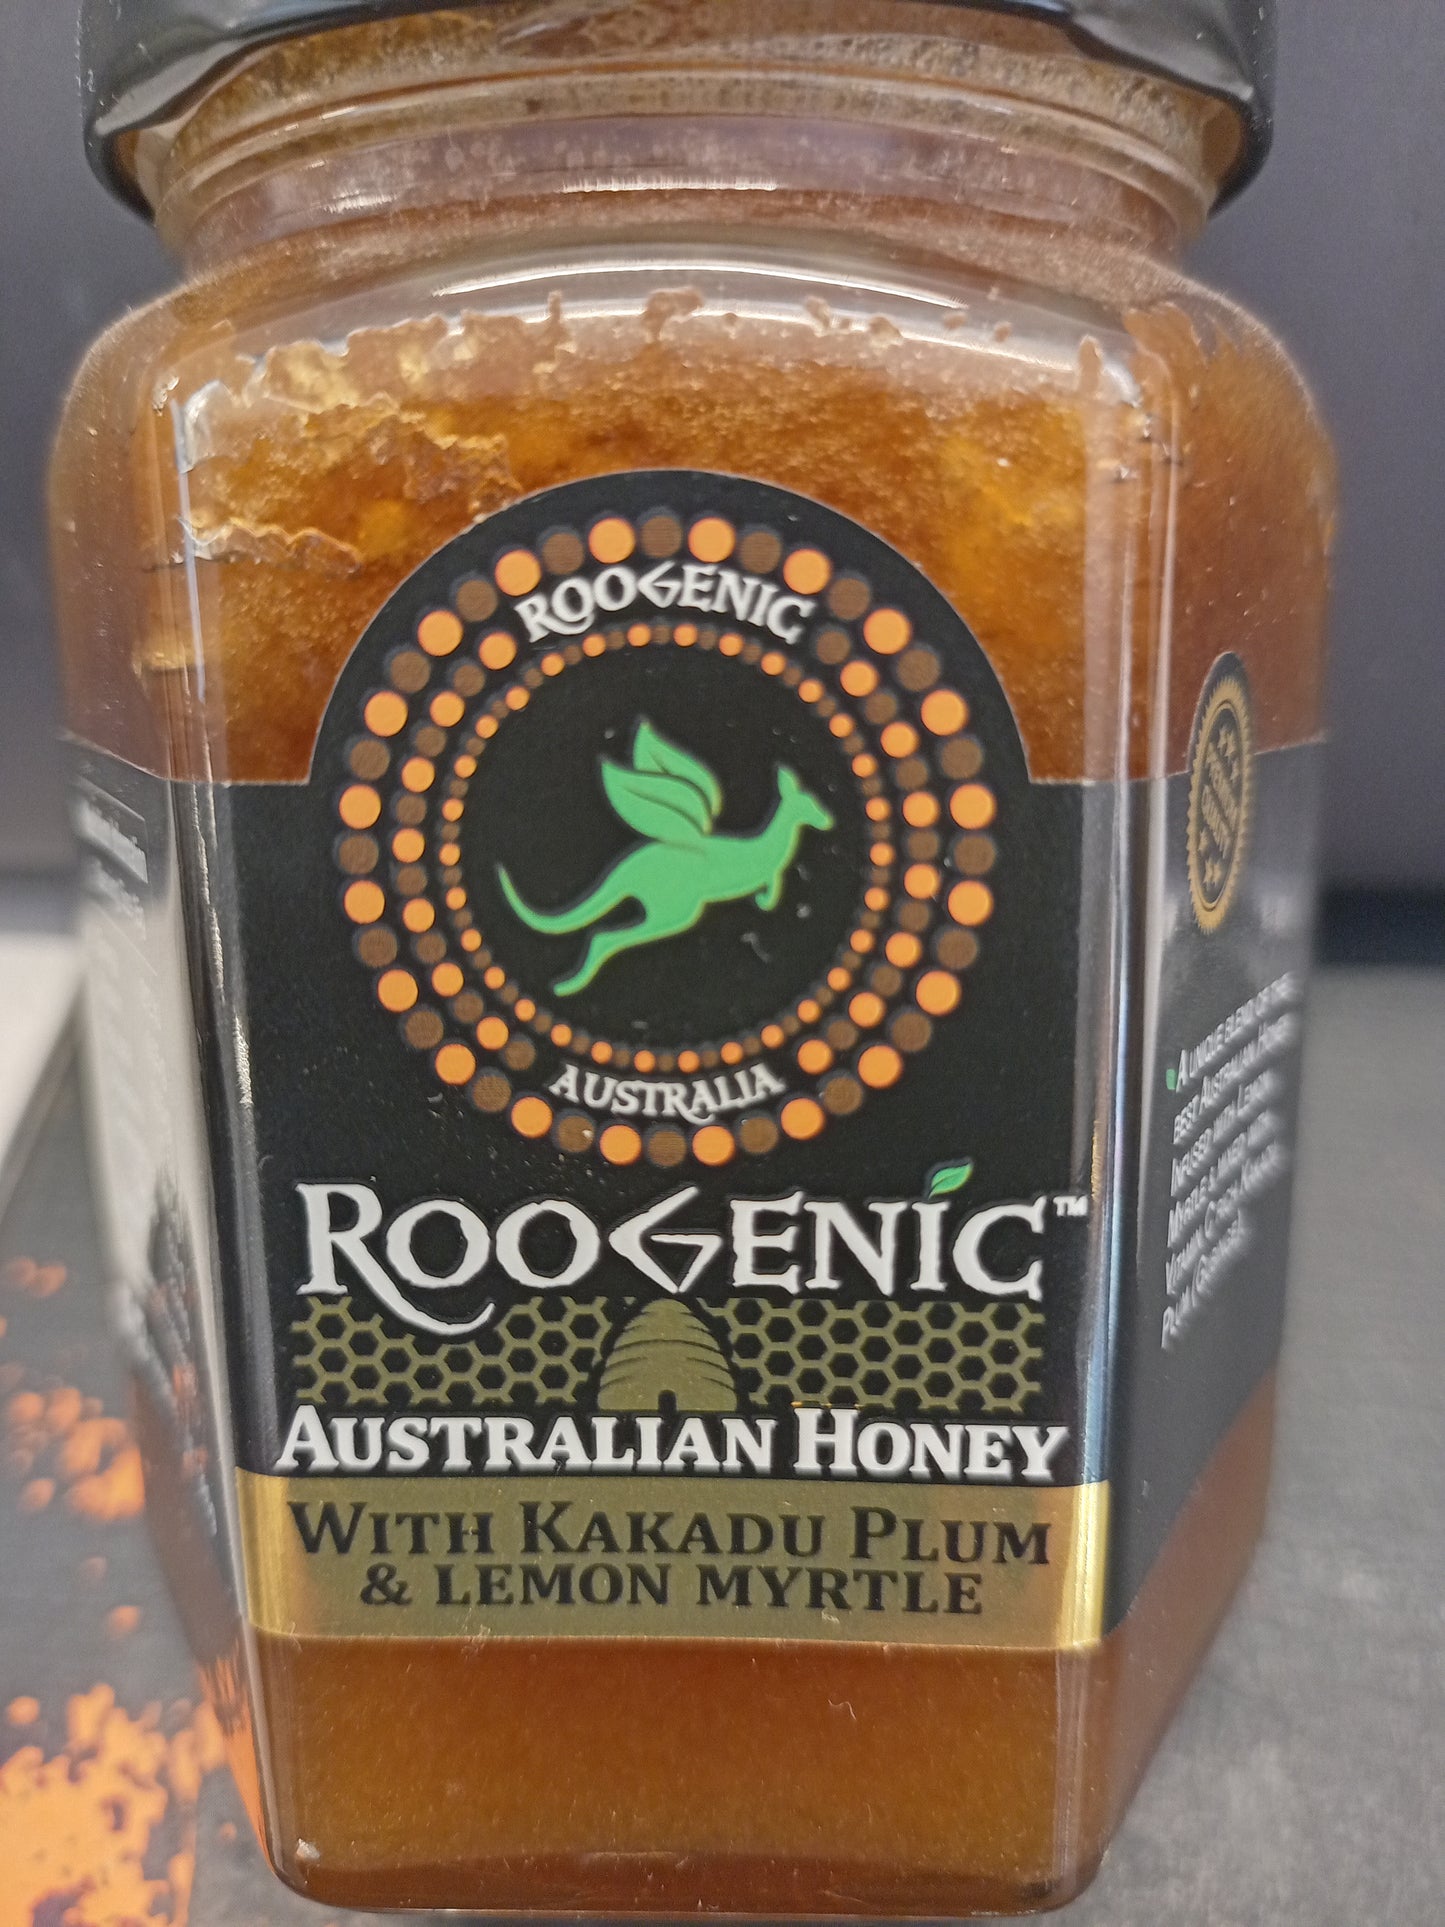 Roogenic - Infused Honey